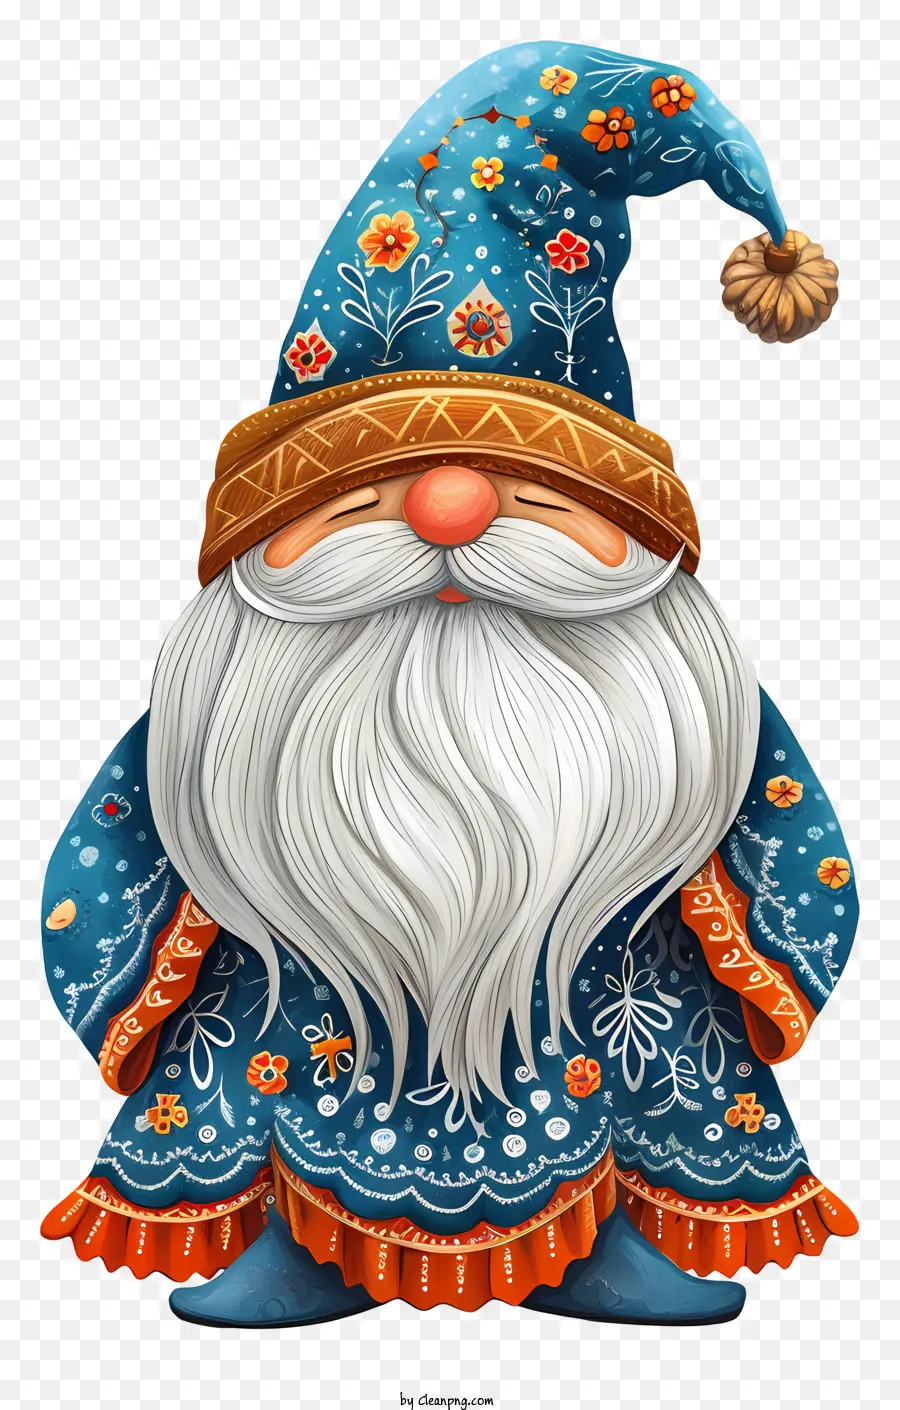 vương miện - Hình ảnh chi tiết của một gnome nữ đầy màu sắc